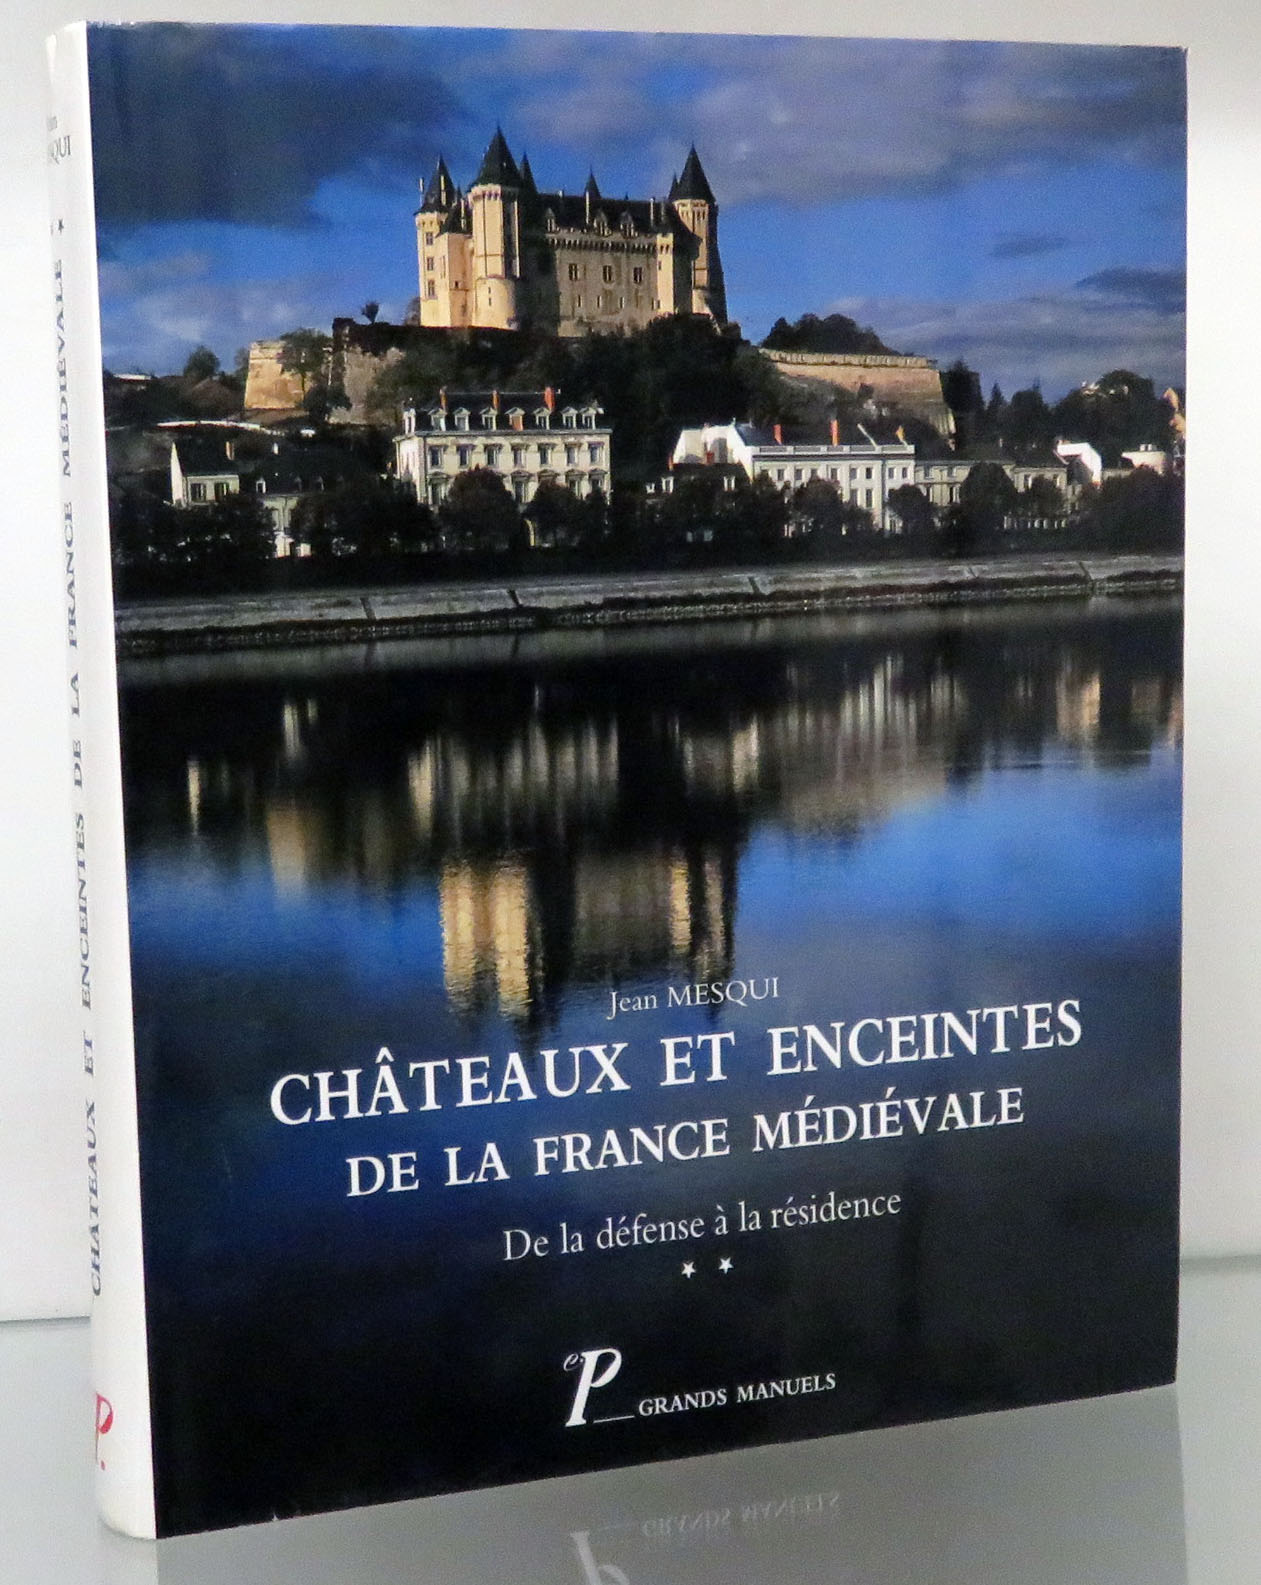 Chateaux Et Enceintes De ;a France Medievale. De la defense a l residence. 2. La Residence Et Les Elements D'Architecture - Jean Mesqui